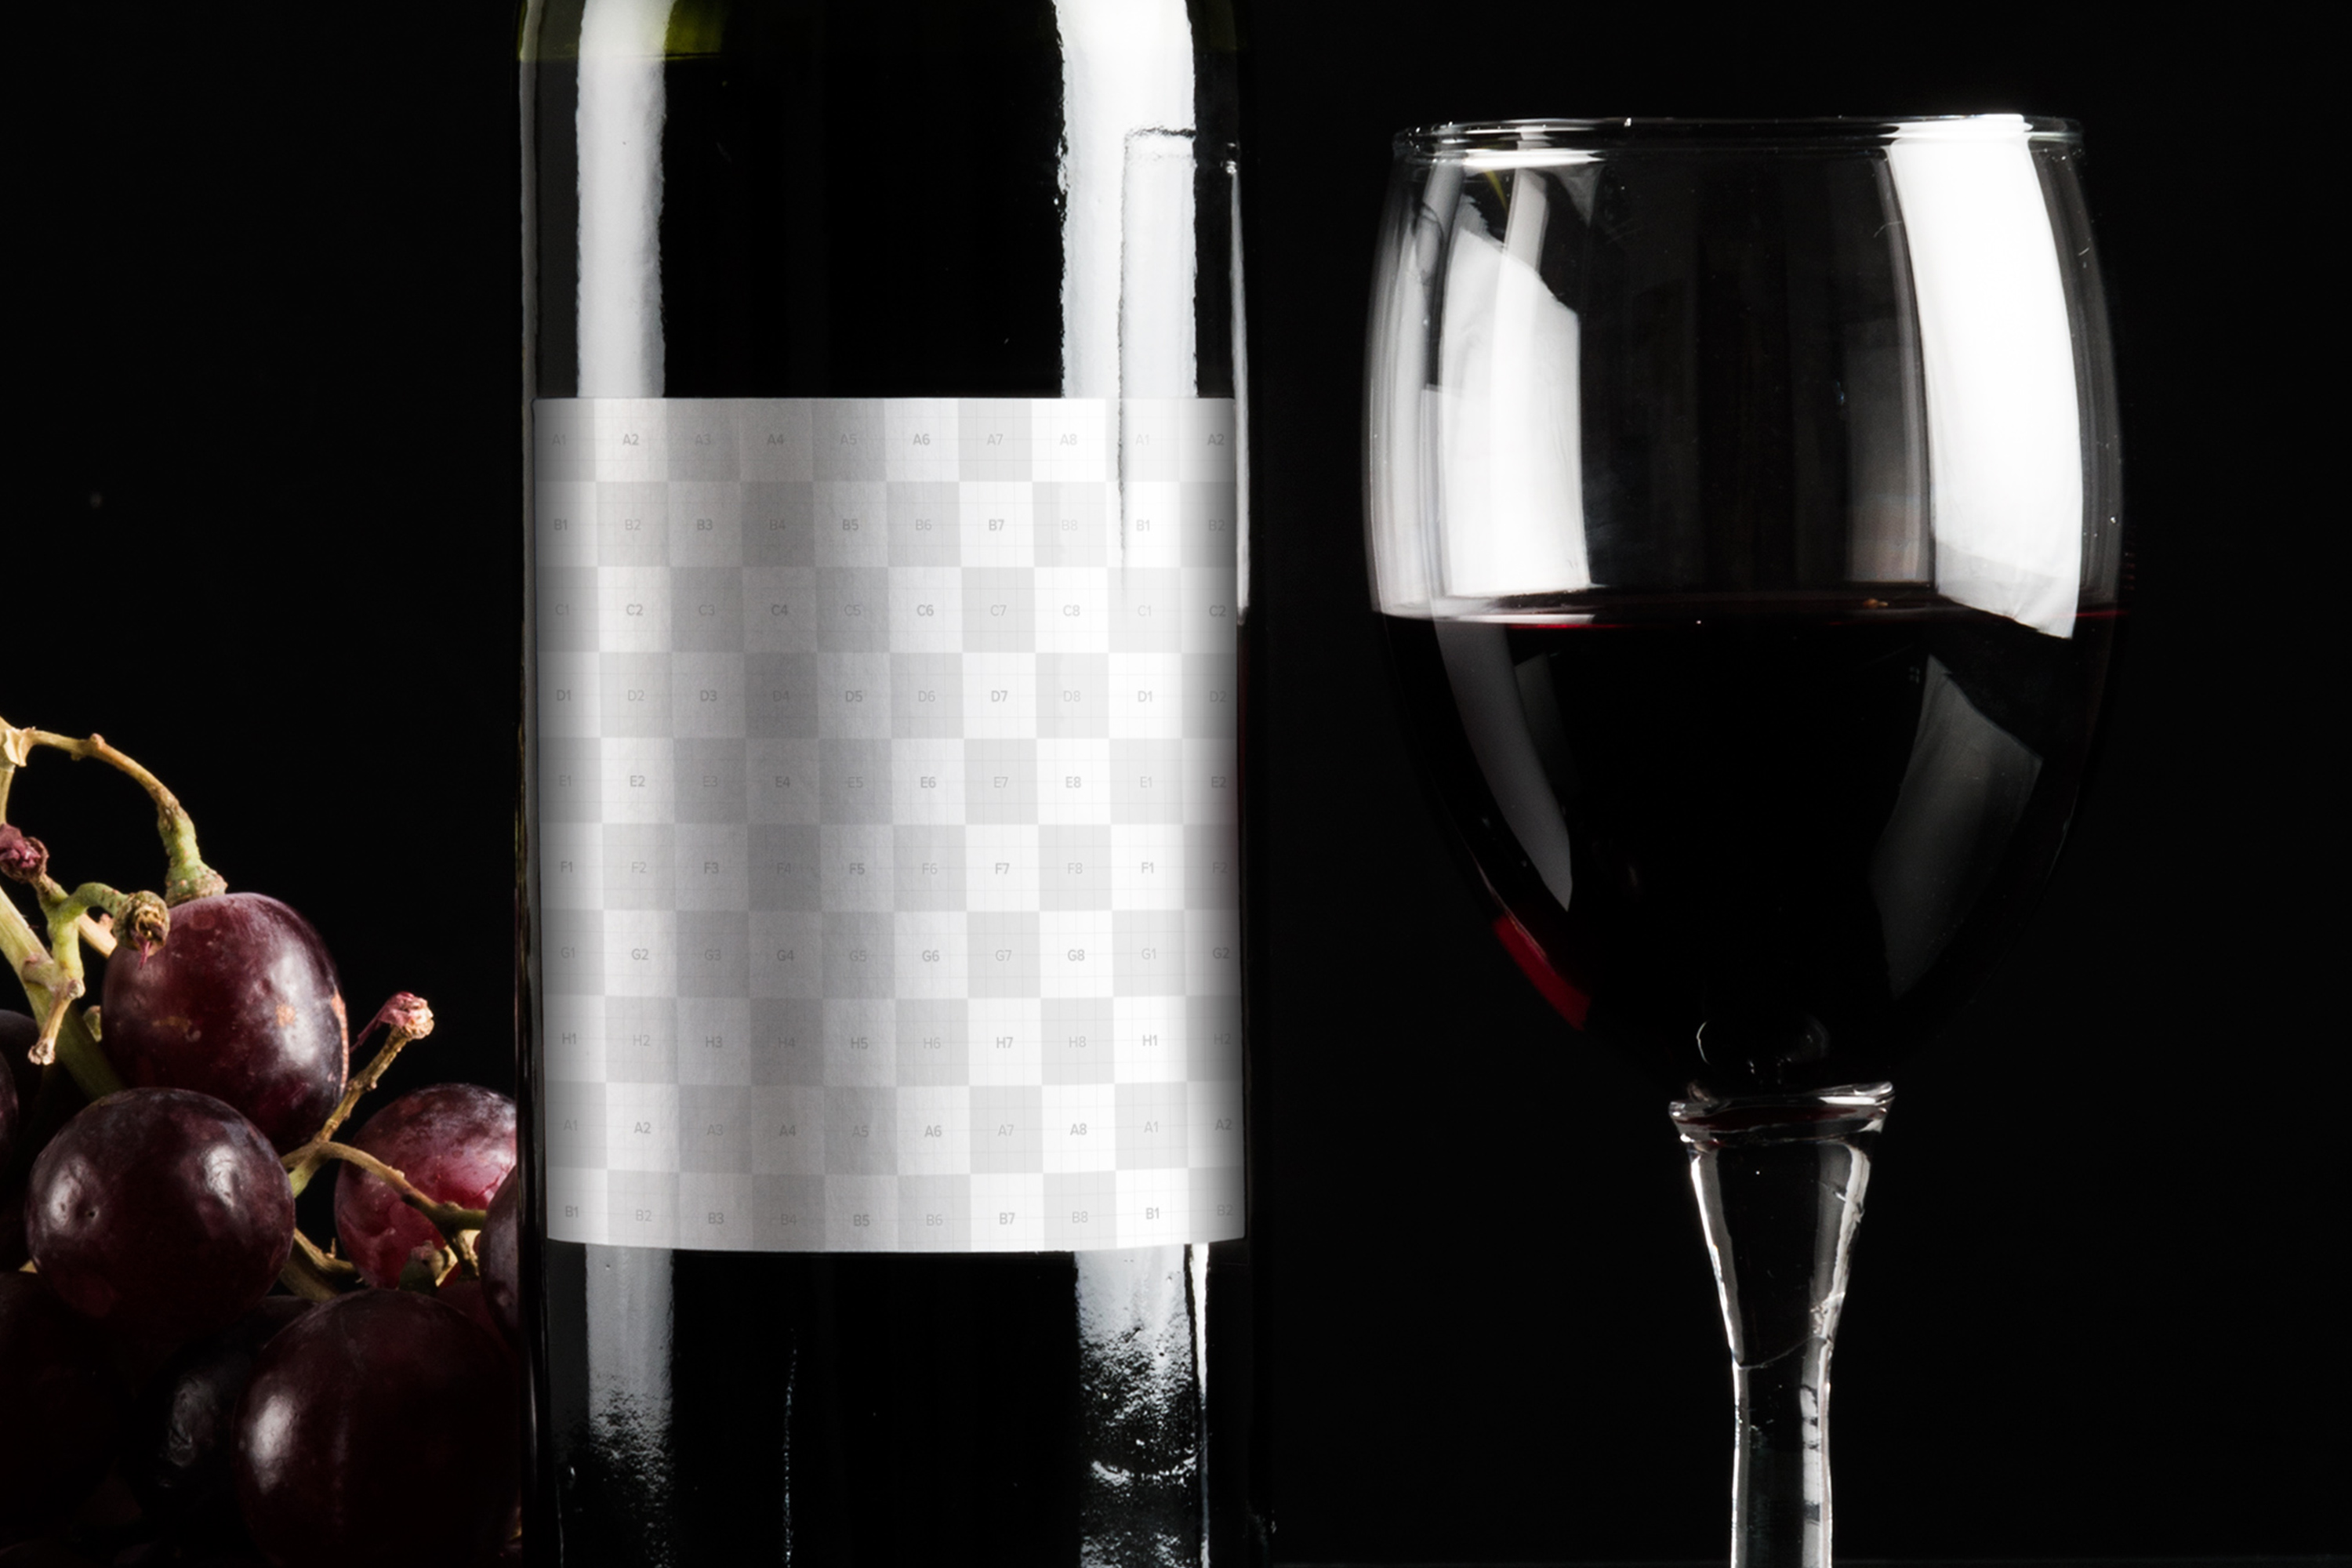 酒类商标设计图预览酒瓶样机模板06 Wine Bottle Mockup 06插图(2)